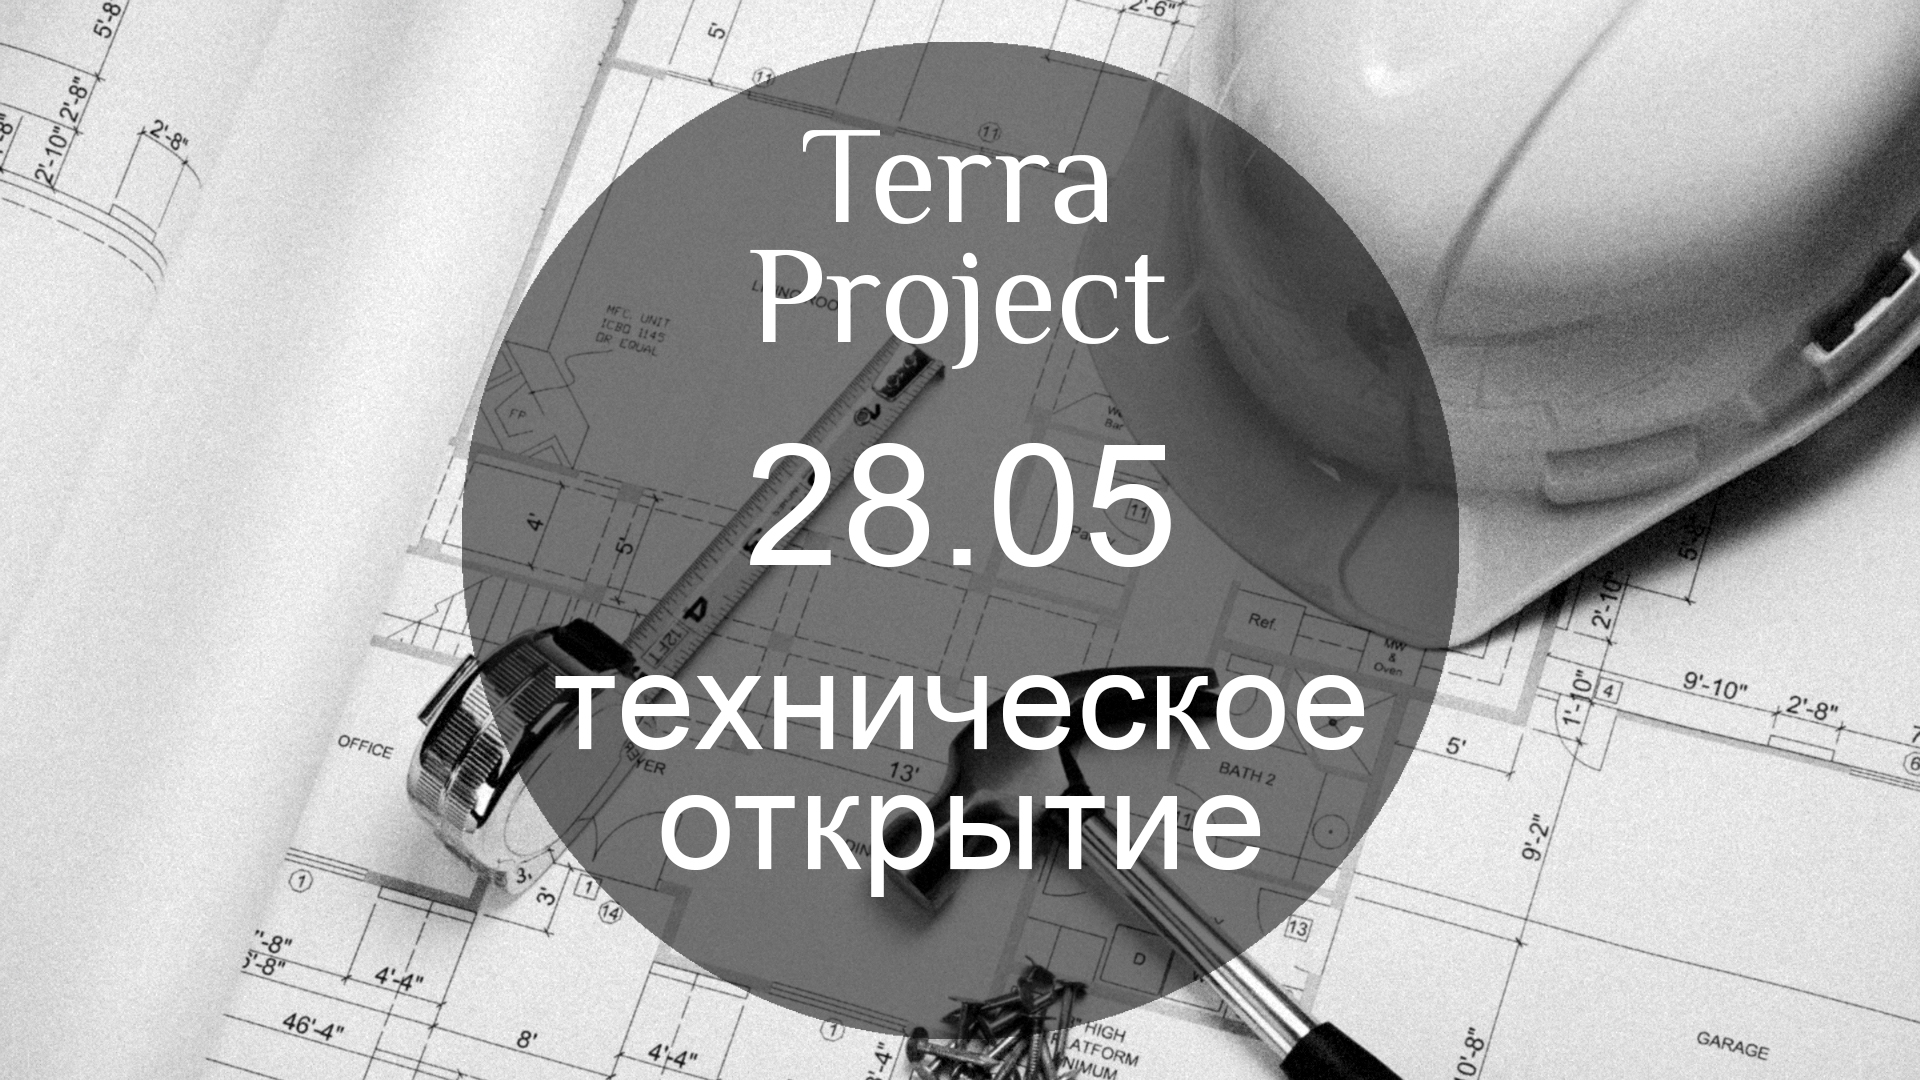 Терра проект. Технические открытия. Терра Проджект. Terra Project Сочи фото. Terra Project.